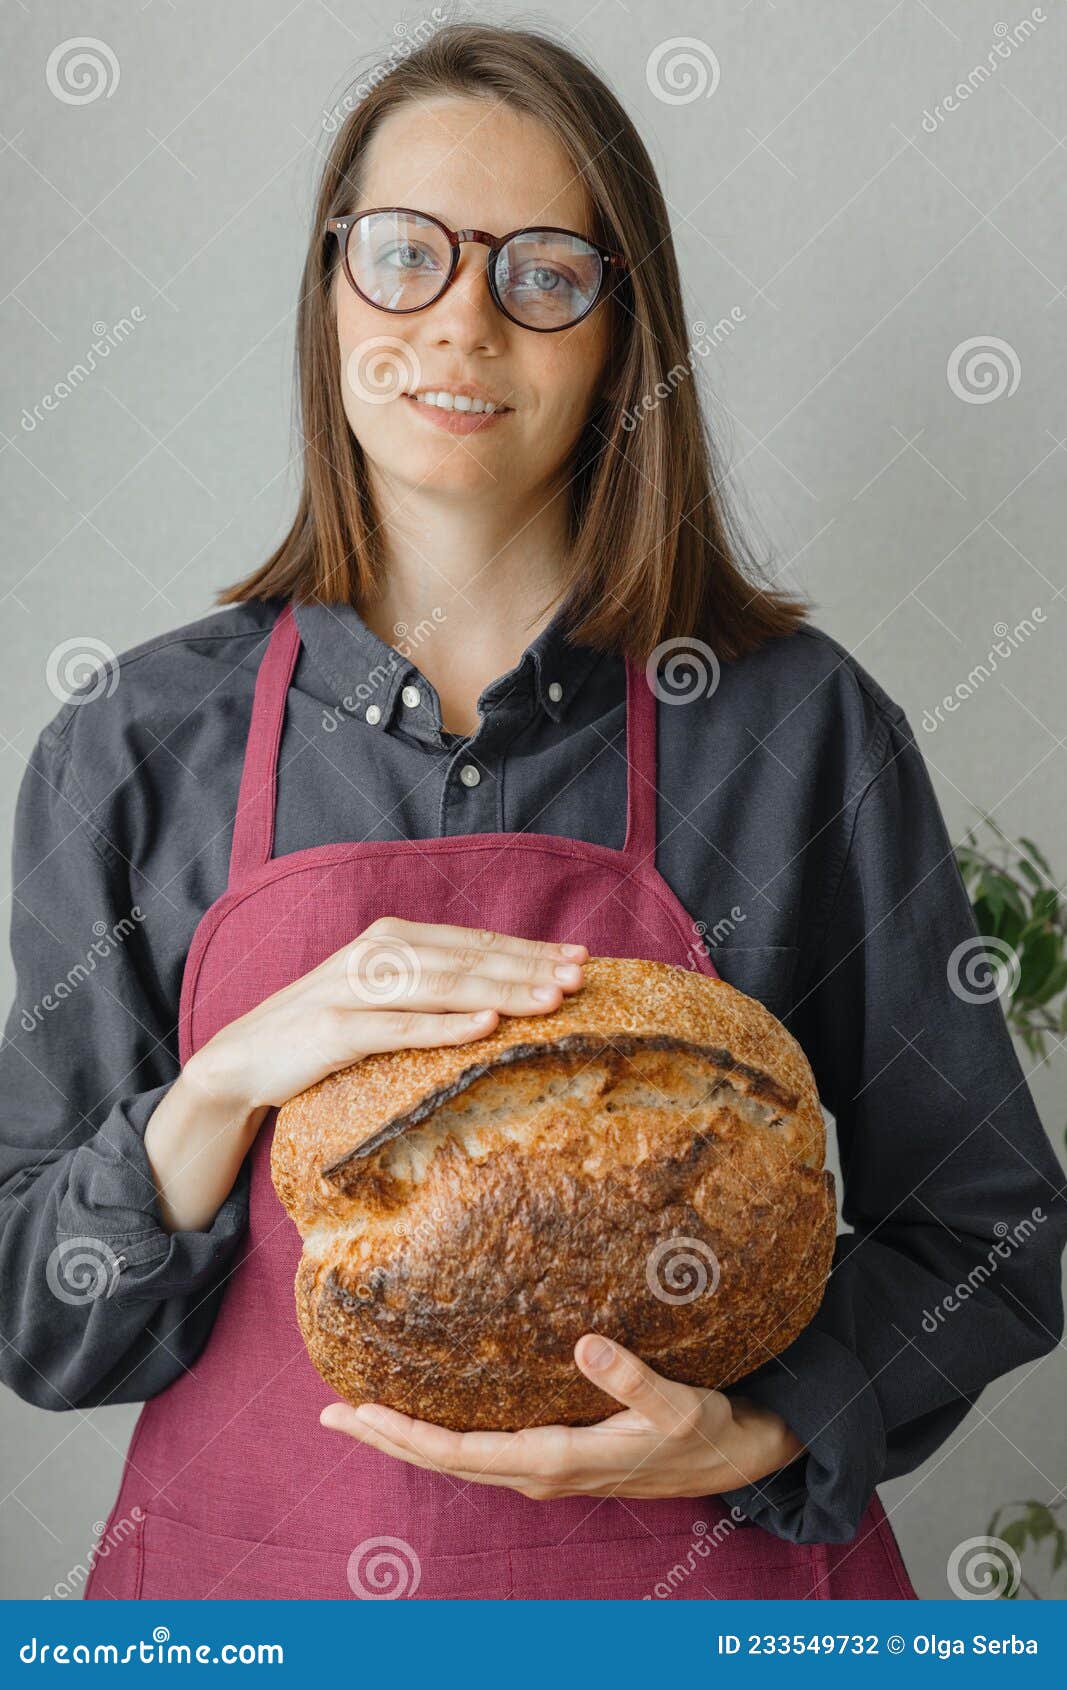 在厨房工作的年轻女面包师 库存图片. 图片 包括有 制作, 蛋糕, 有吸引力的, 厨师, 咖啡馆, 自创 - 253184653